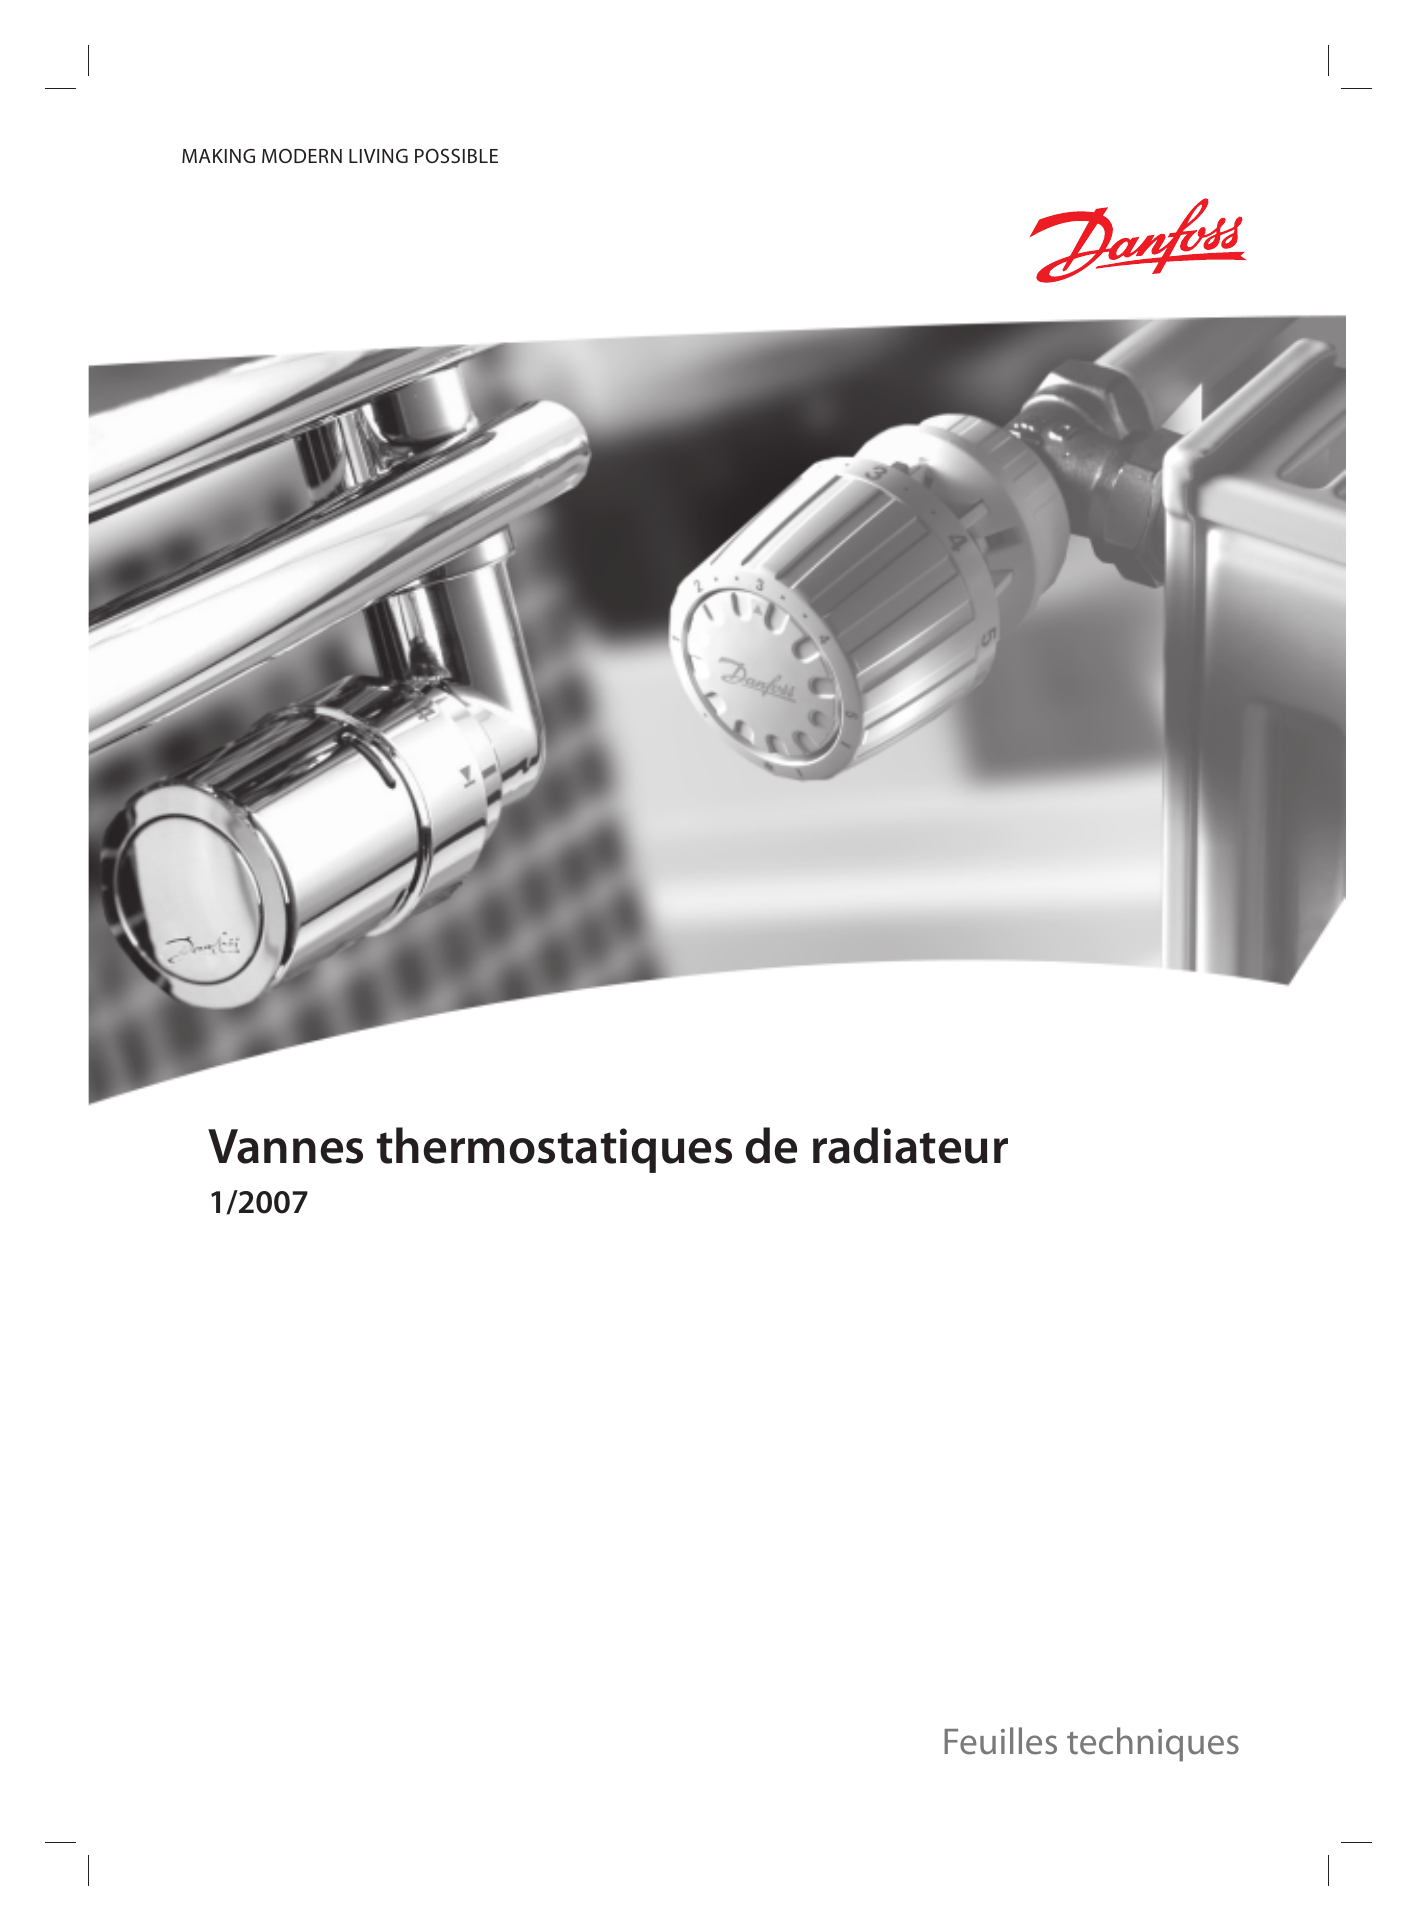 Vannes Thermostatiques De Radiateur | Manualzz serapportantà Robinet Thermostatique Danfoss Fiche Technique